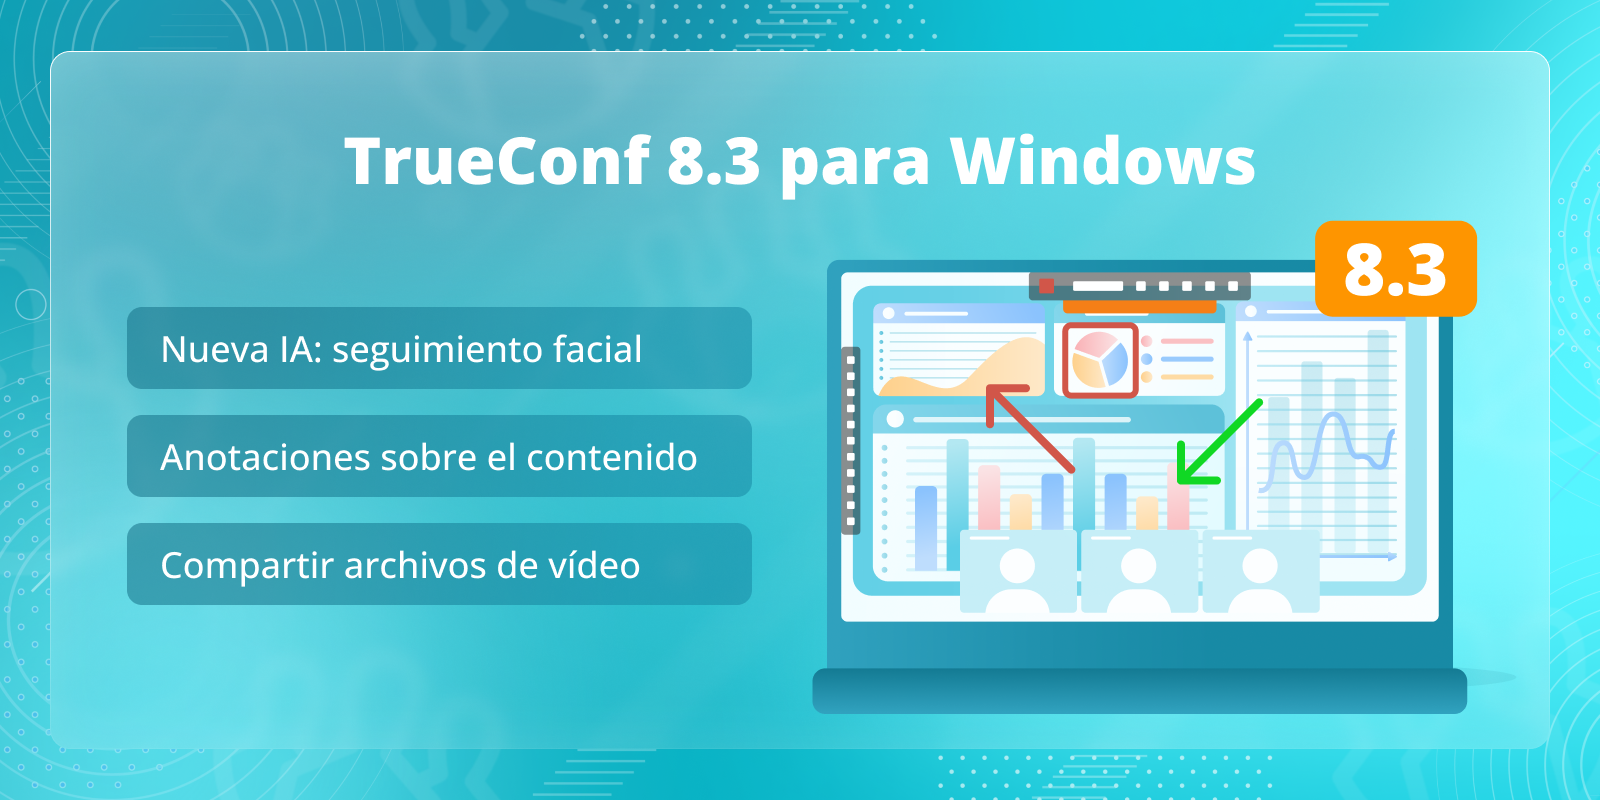 TrueConf 8.3 para Windows: Nueva función basada en IA, anotaciones sobre el contenido y compartir archivos de video 3